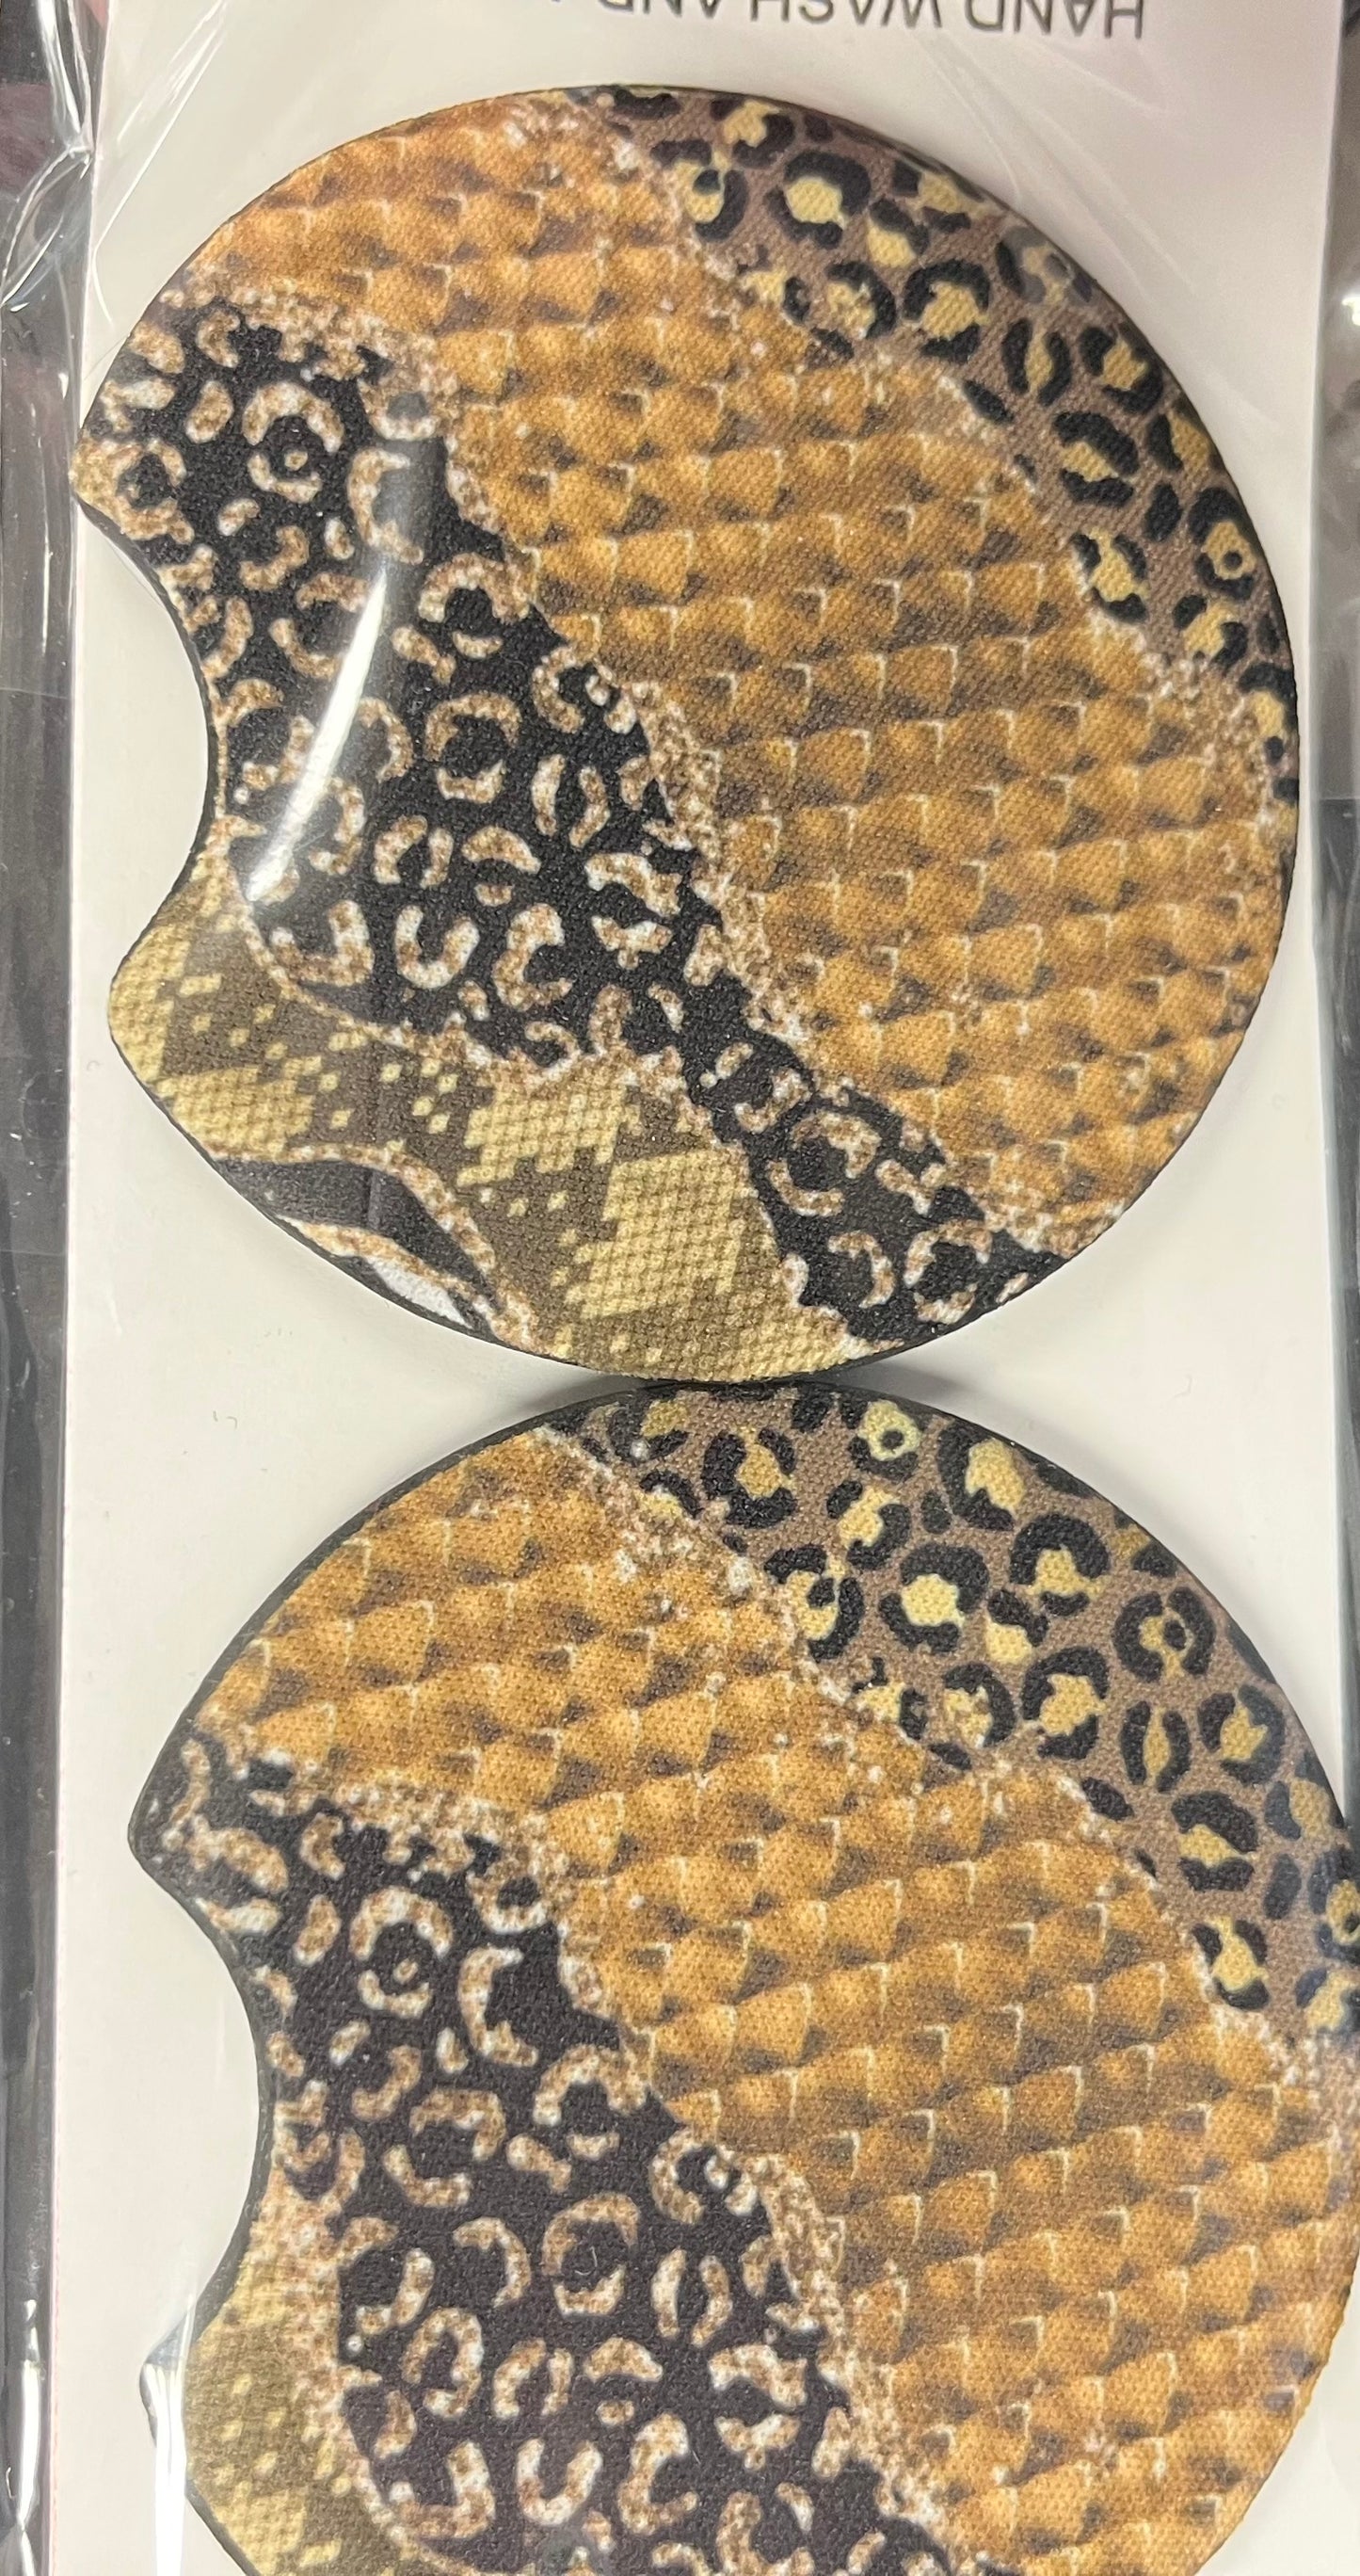 Snake and Cheetah Print Car Coaster 2 pack